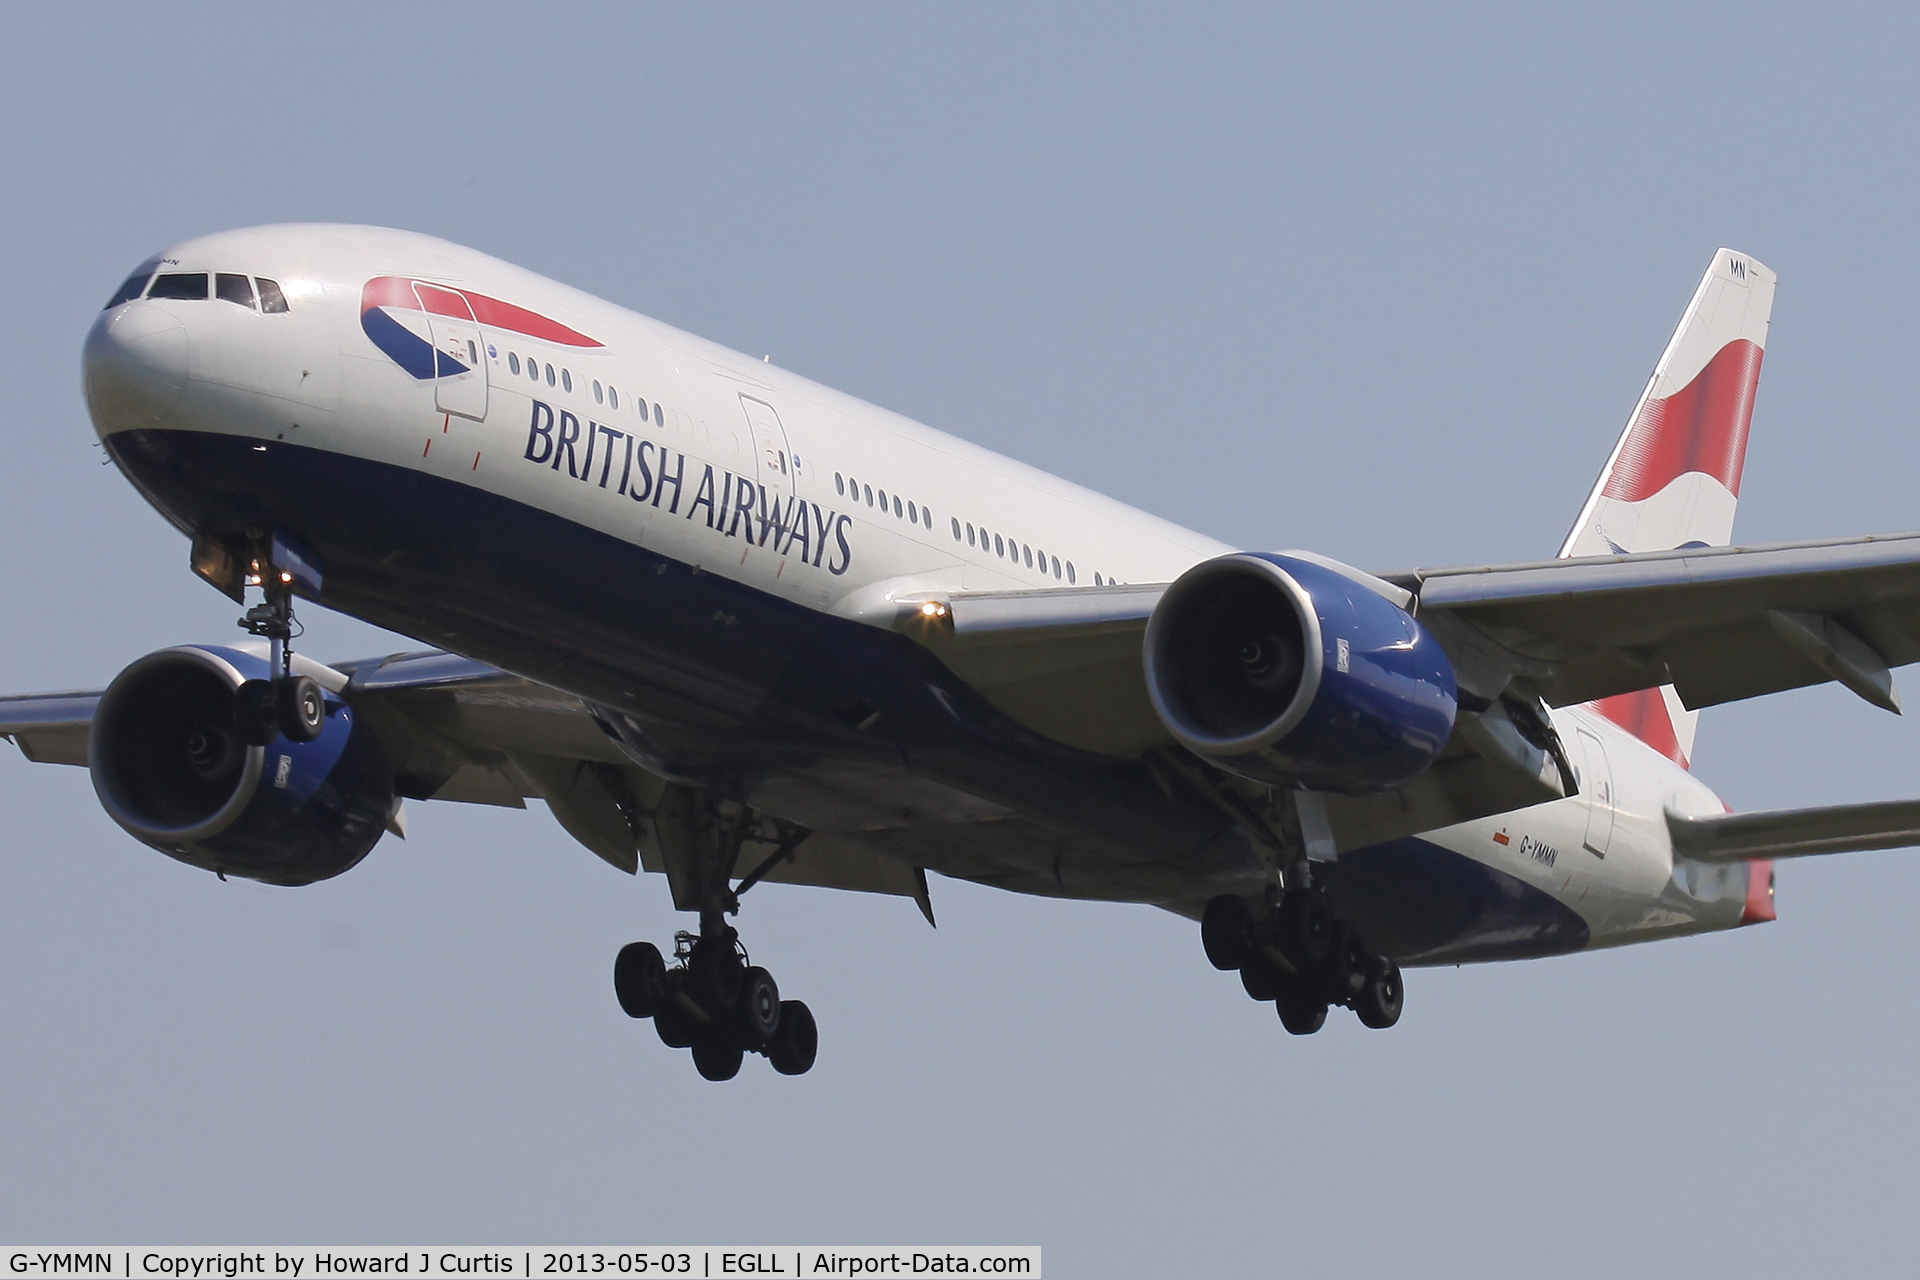 G-YMMN, 2001 Boeing 777-236 C/N 30316, British Airways, on approach to runway 27L.